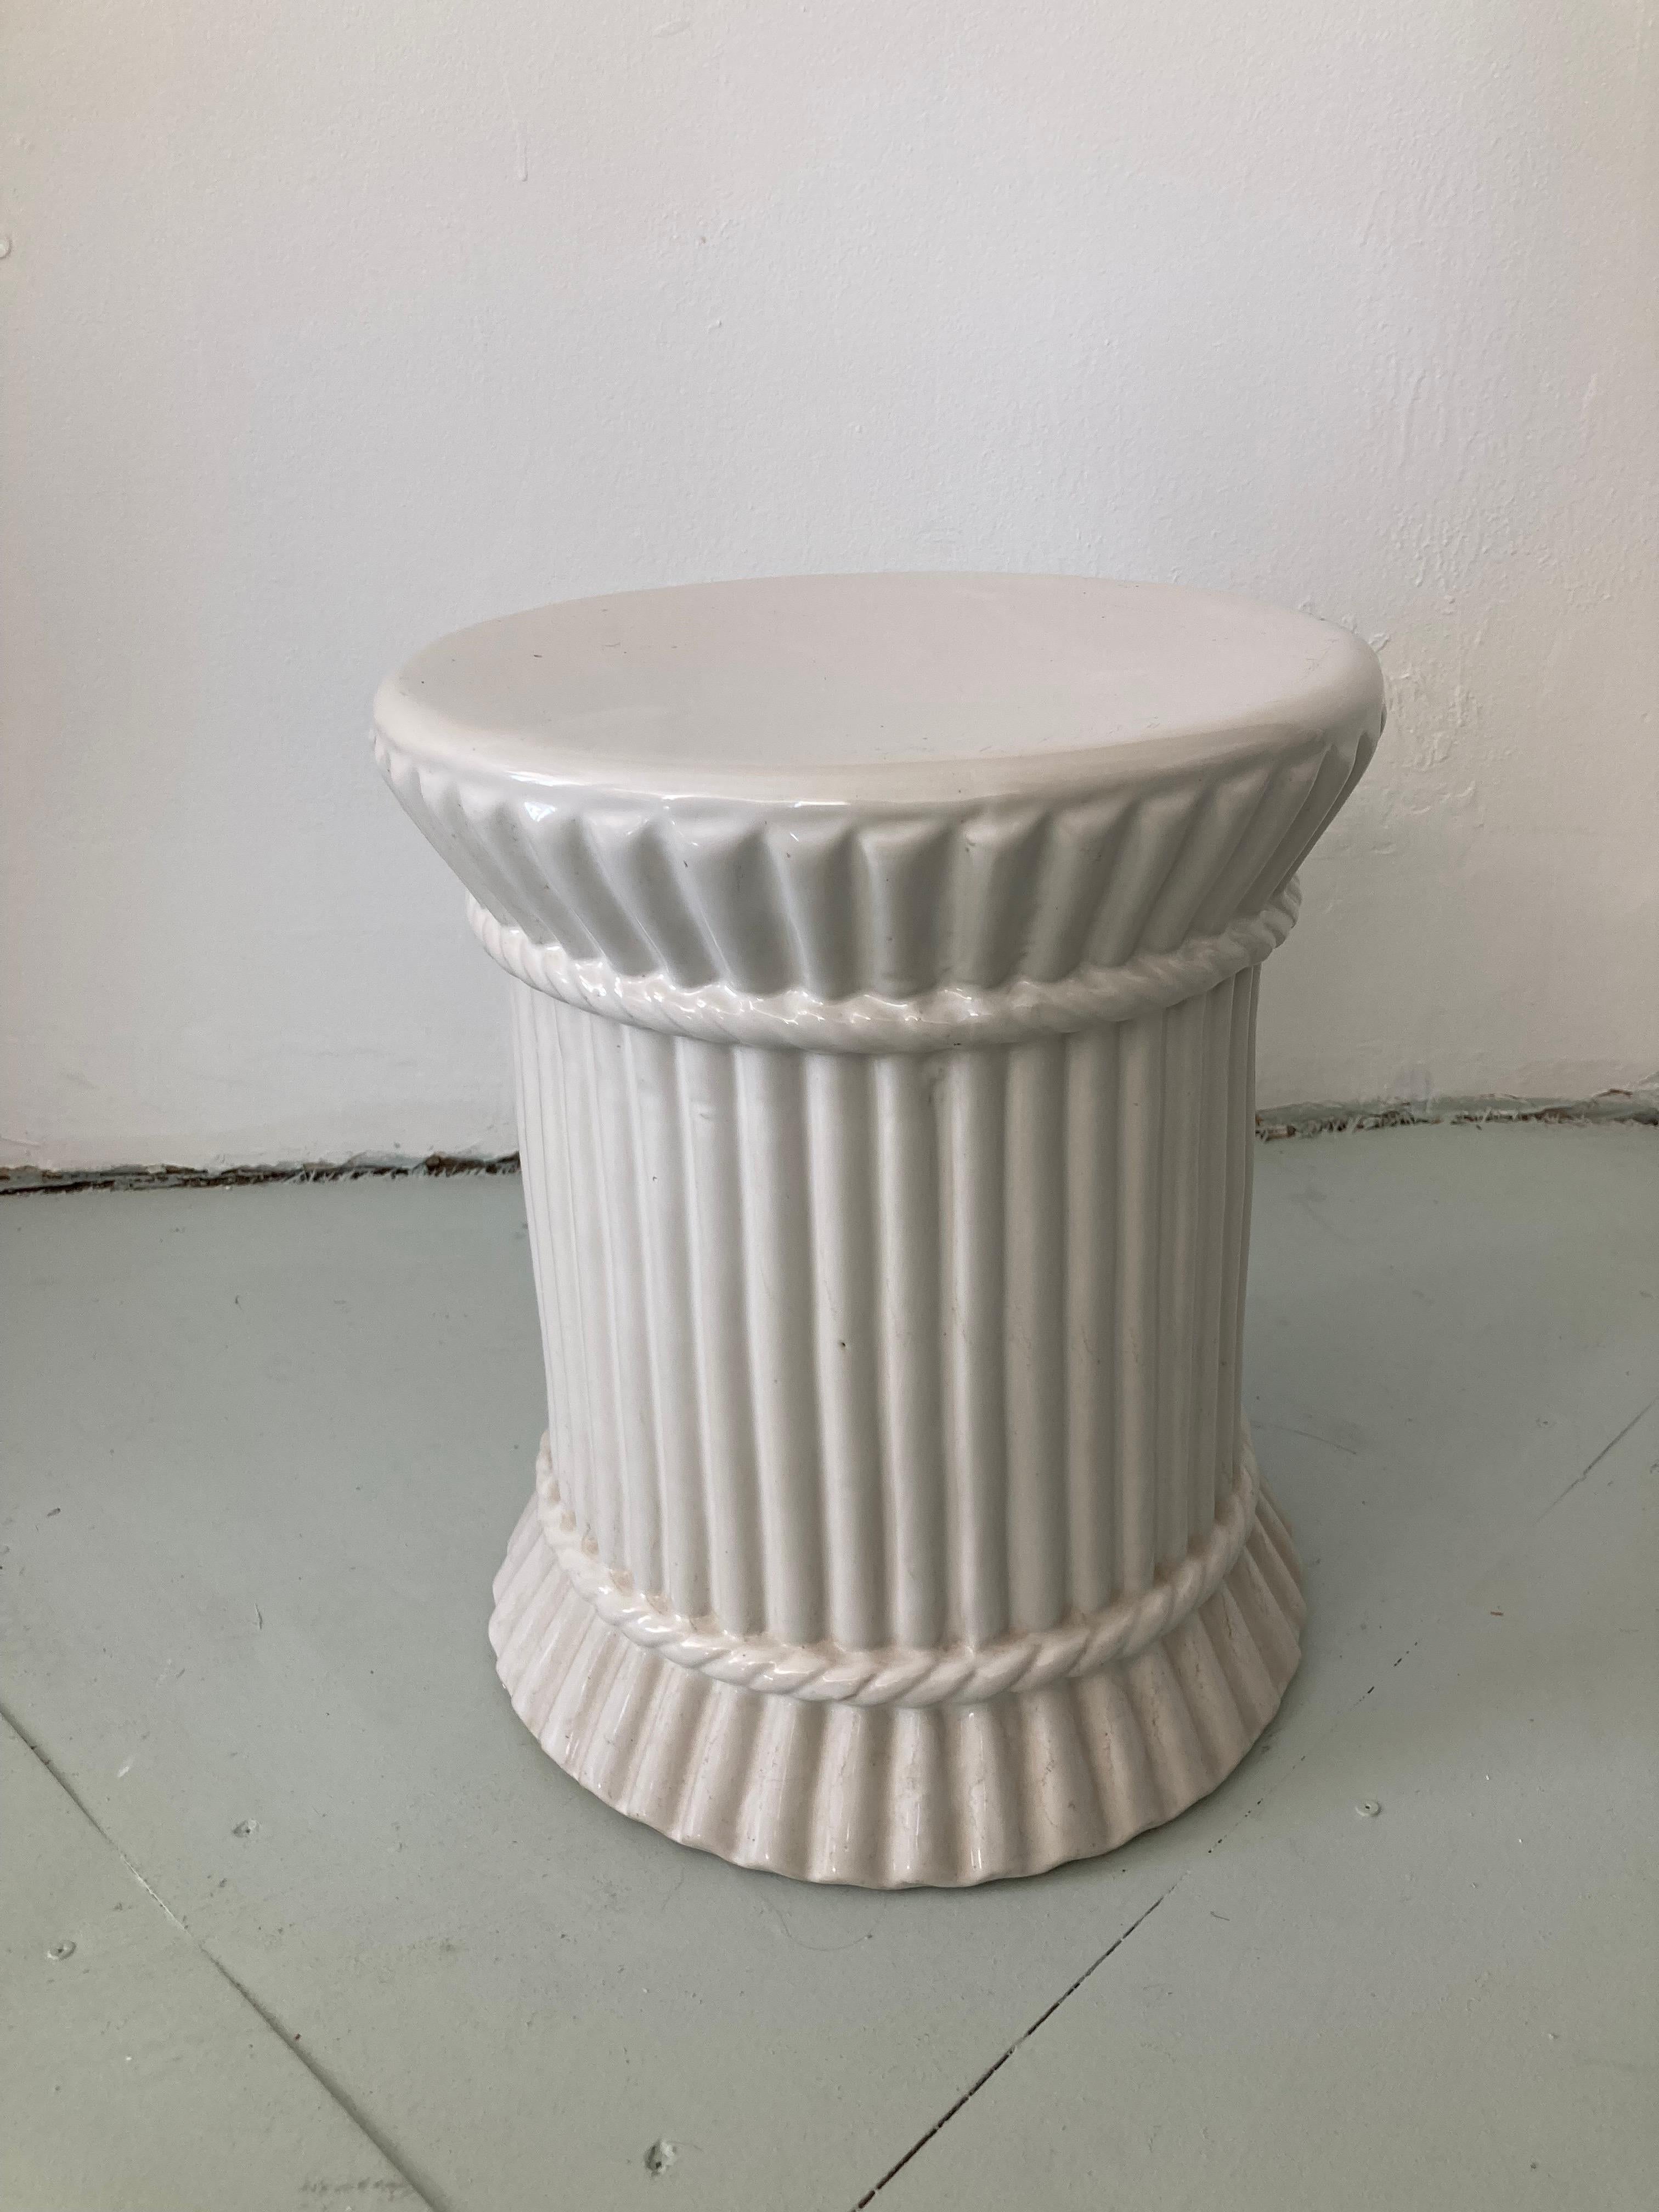 Klassischer architektonischer weiß glasierter Keramik-Gartensitz in runder Form mit einfachen Details. Bringen Sie architektonische Formen in Ihr Haus oder Ihren Garten, verwenden Sie diesen Gartensitzplatz als Cocktailtisch oder als zusätzlichen